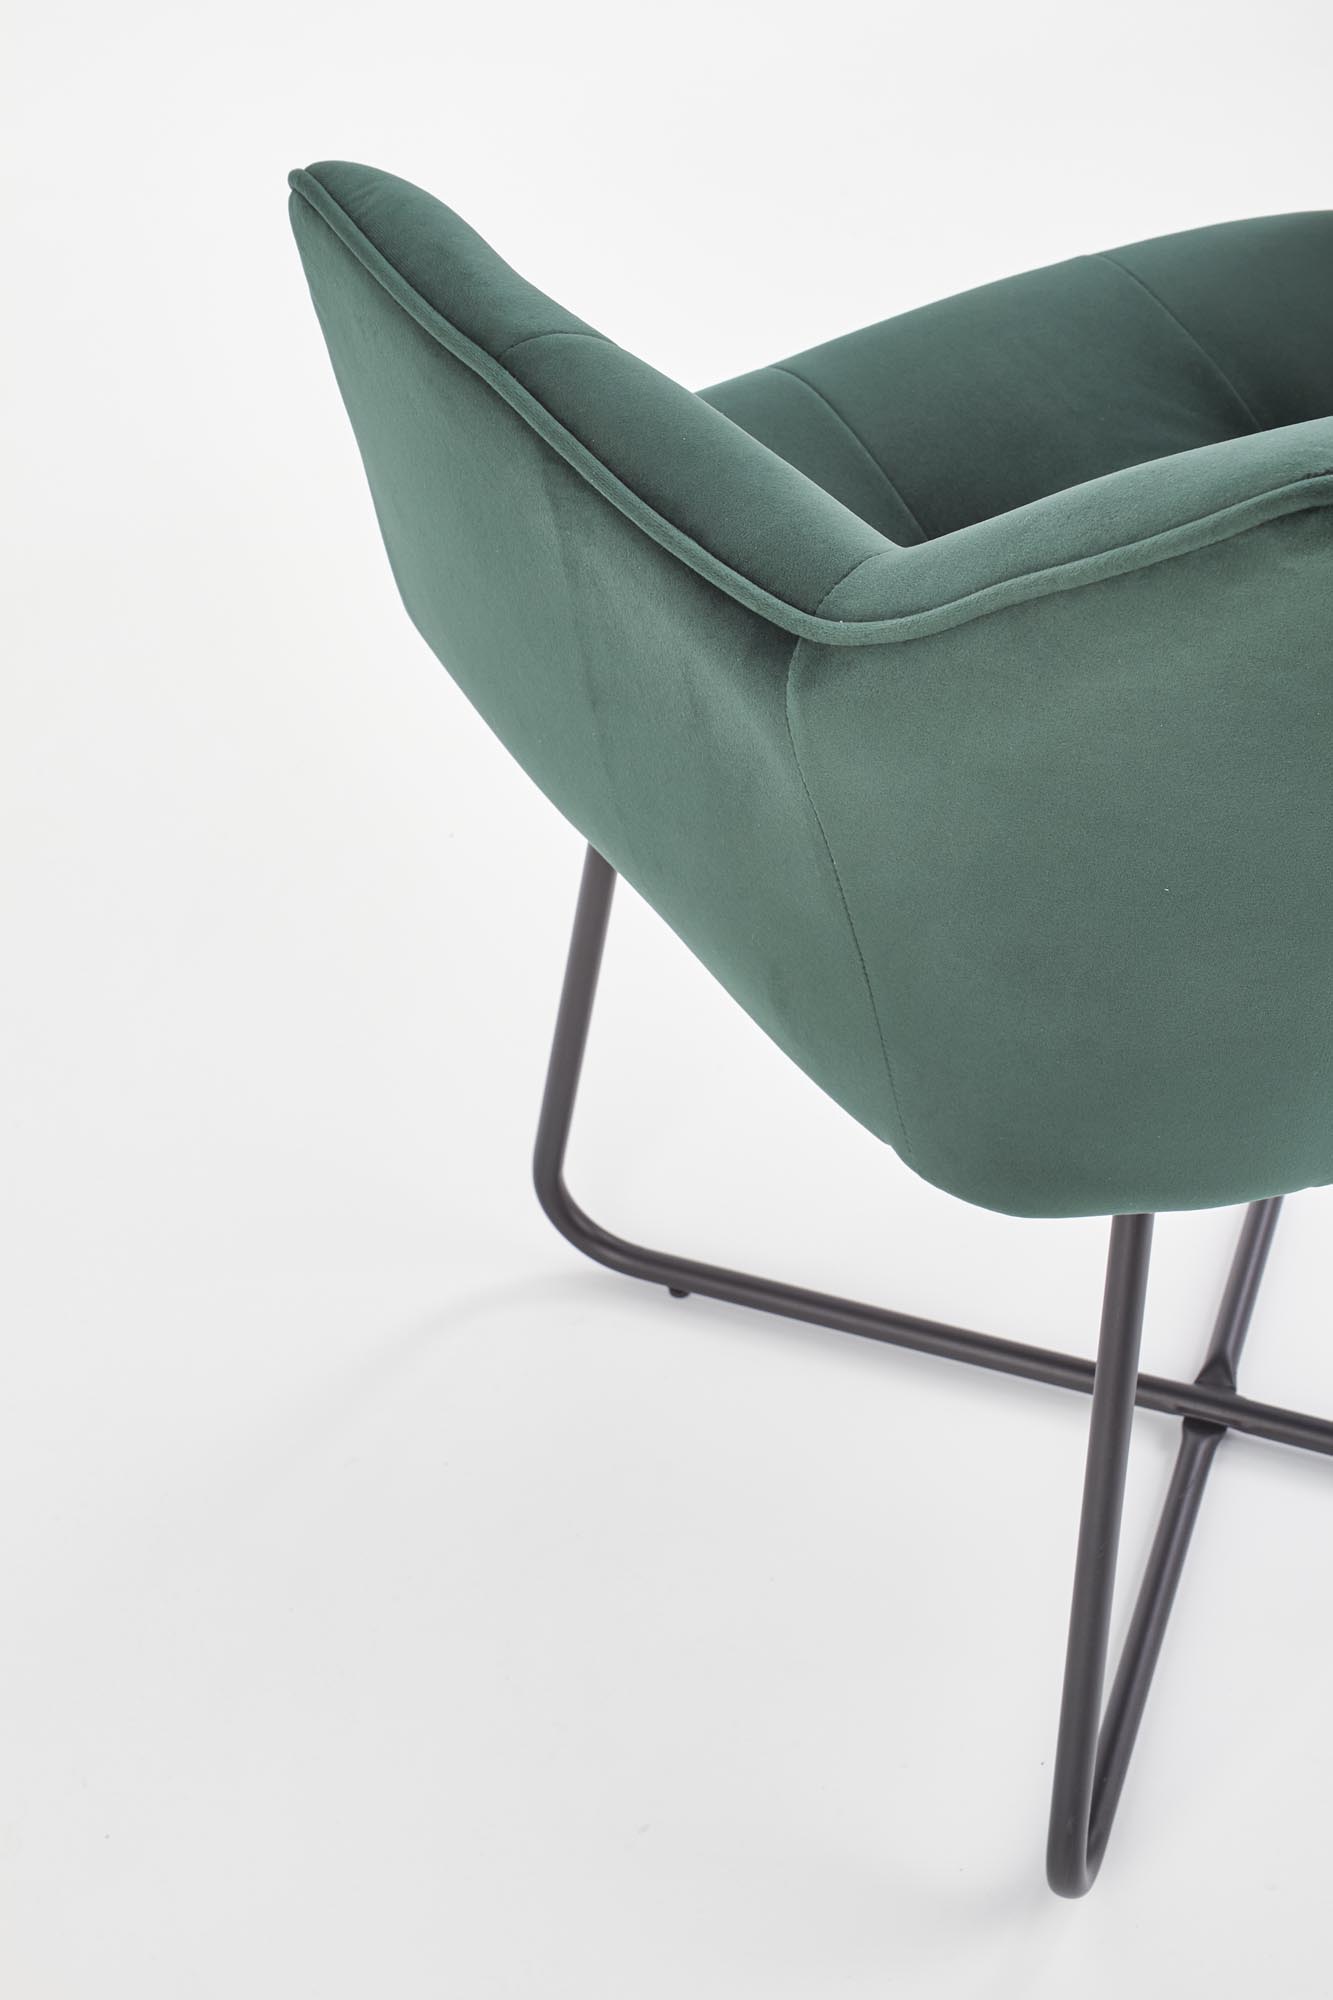 K377 szék - sötétzöld k377 Židle tmavý Zelený